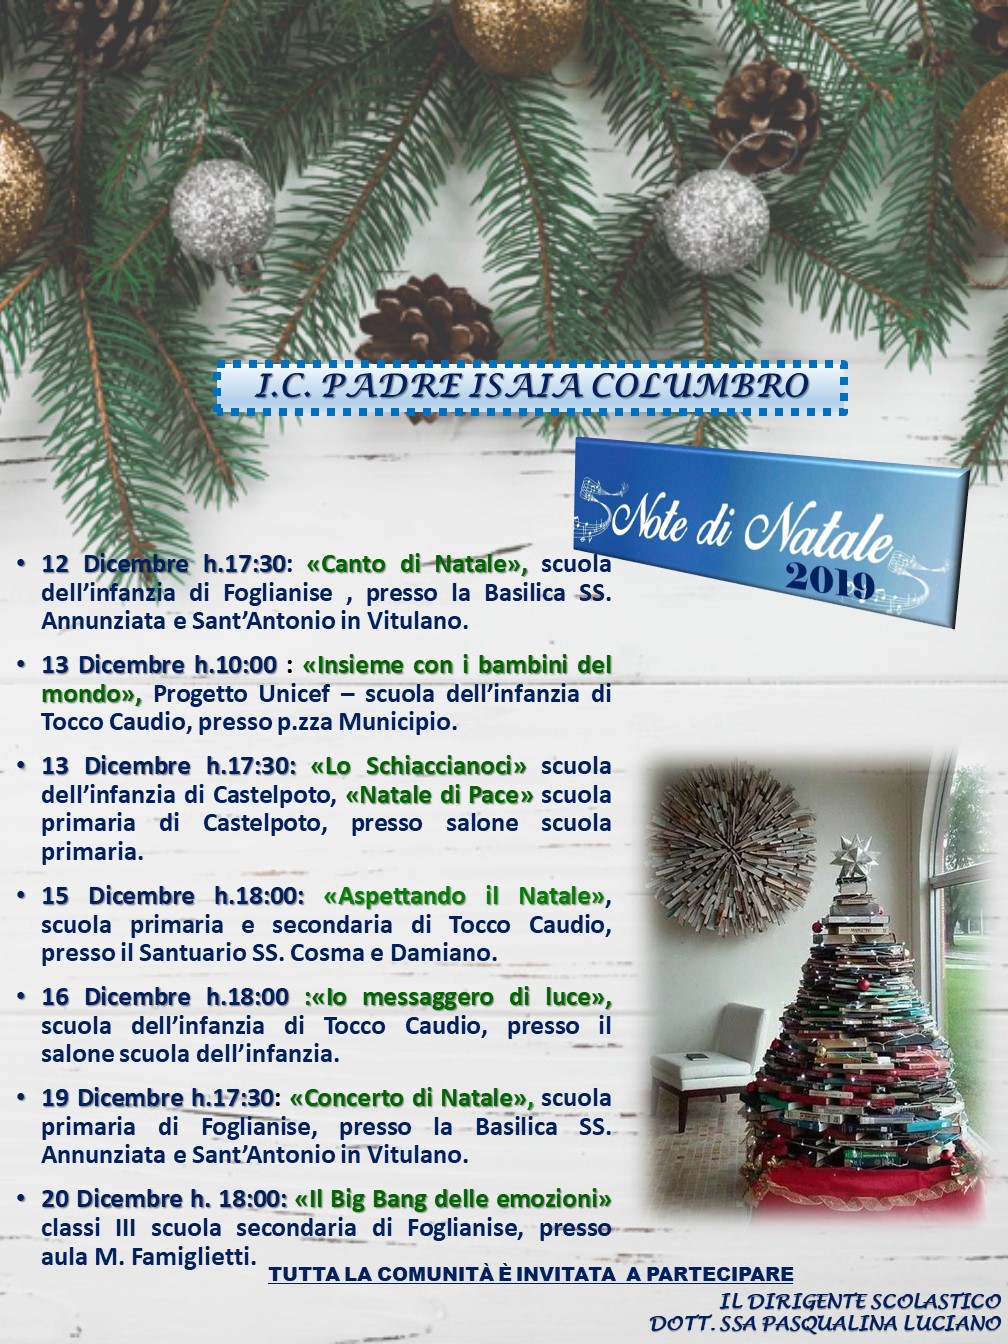 Poesie Di Natale Napoletane Scuola Primaria.Eventi E Attivita Didattiche Website Www Icpadreisaia Edu It